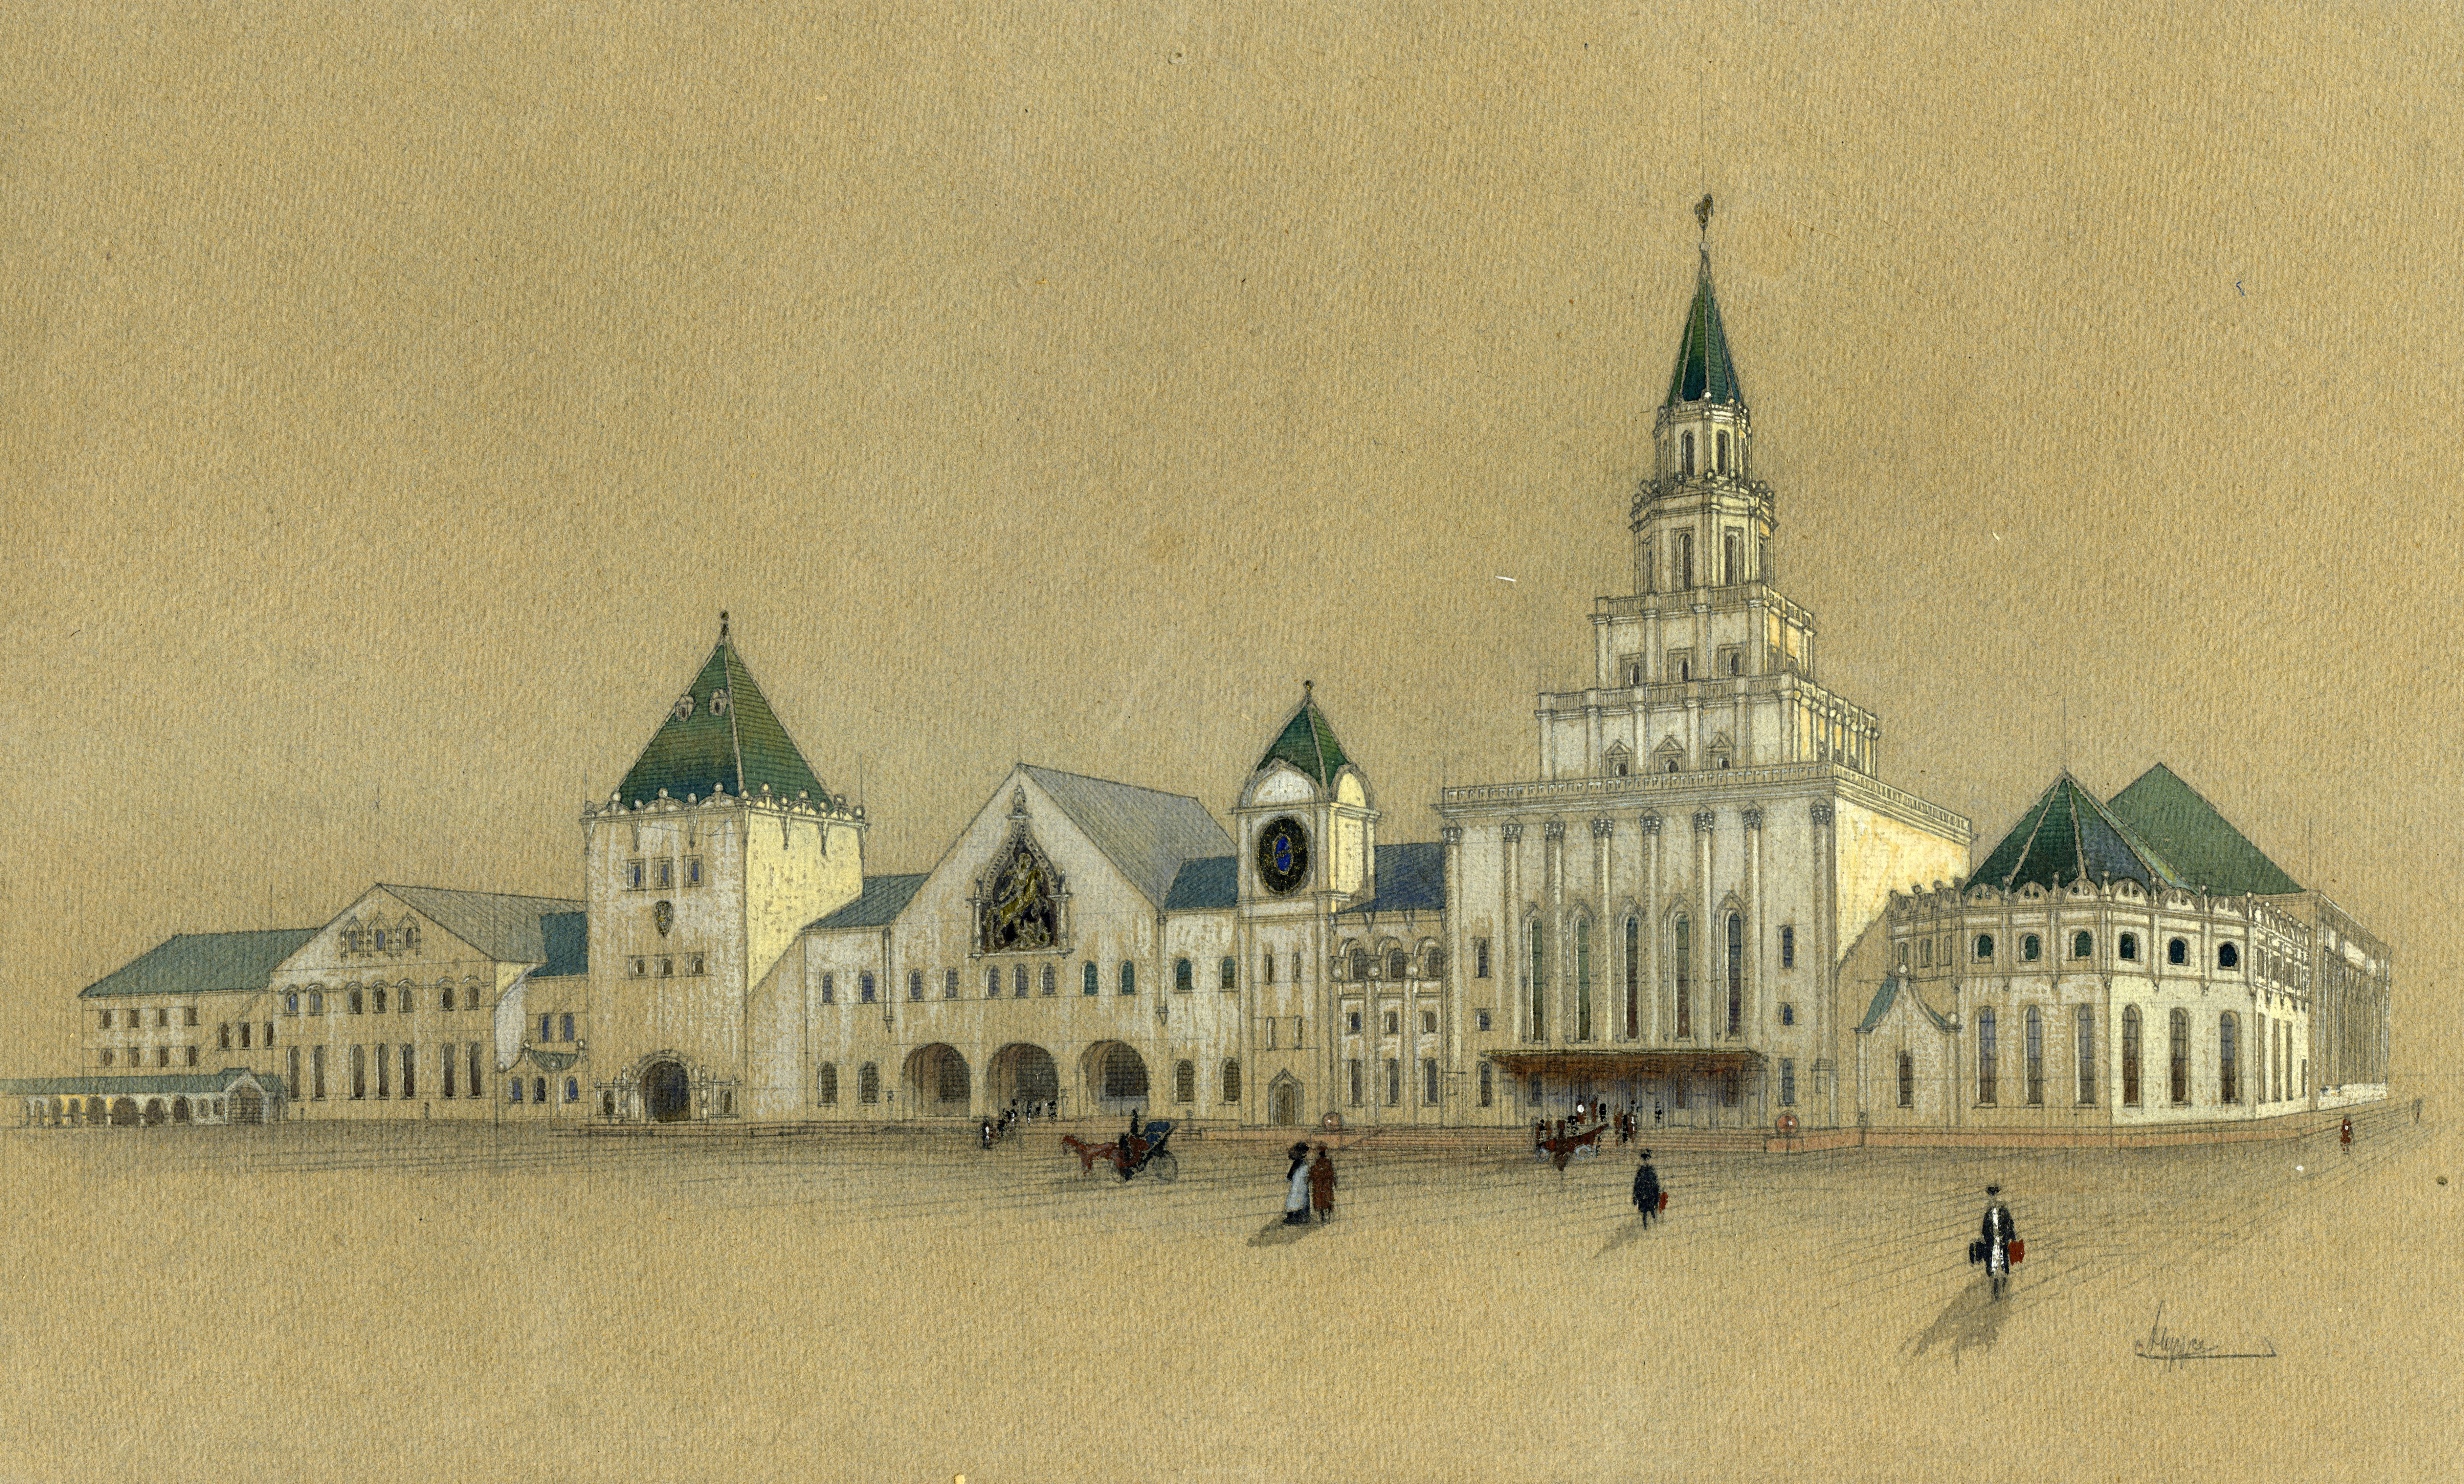 Казанский вокзал в Москве – финал творческого сотрудничества 